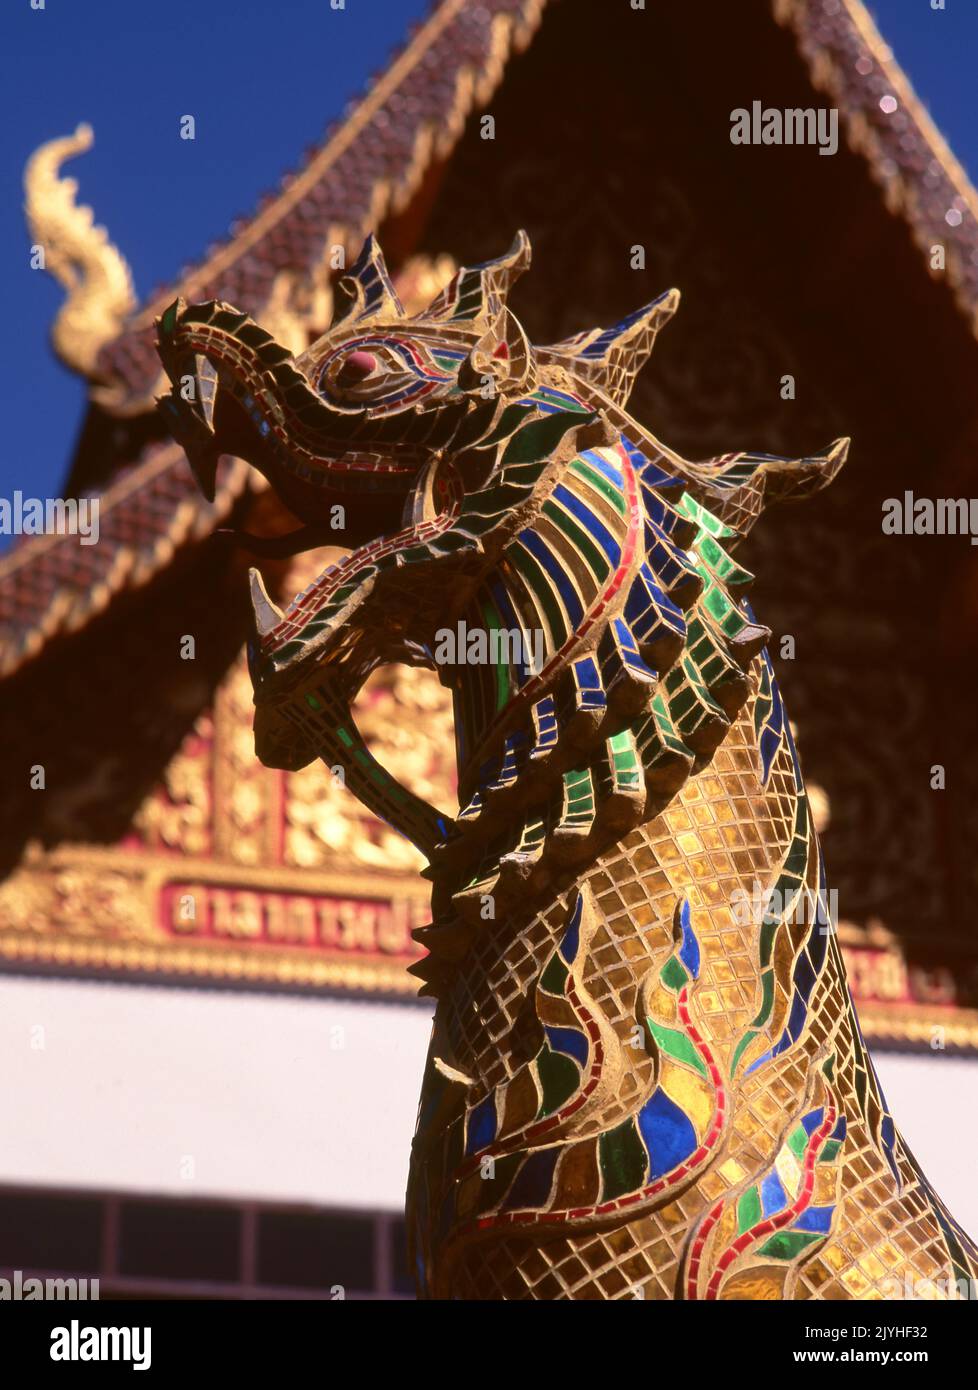 Thailandia: singha decorativo (leone mitico), Wat Phrathat Doi Suthep, un tempio buddista Theravada situato sul Doi Suthep (montagna Suthep), che domina la città di Chiang mai. Il magnifico Chedi dorato, che risale al 16th ° secolo, offre superbe vedute attraverso la Valle di Chiang mai fino al fiume Ping. Re Mengrai fondò la città di Chiang mai (che significa 'nuova città') nel 1296, e successe a Chiang Rai come capitale del regno Lanna. Foto Stock